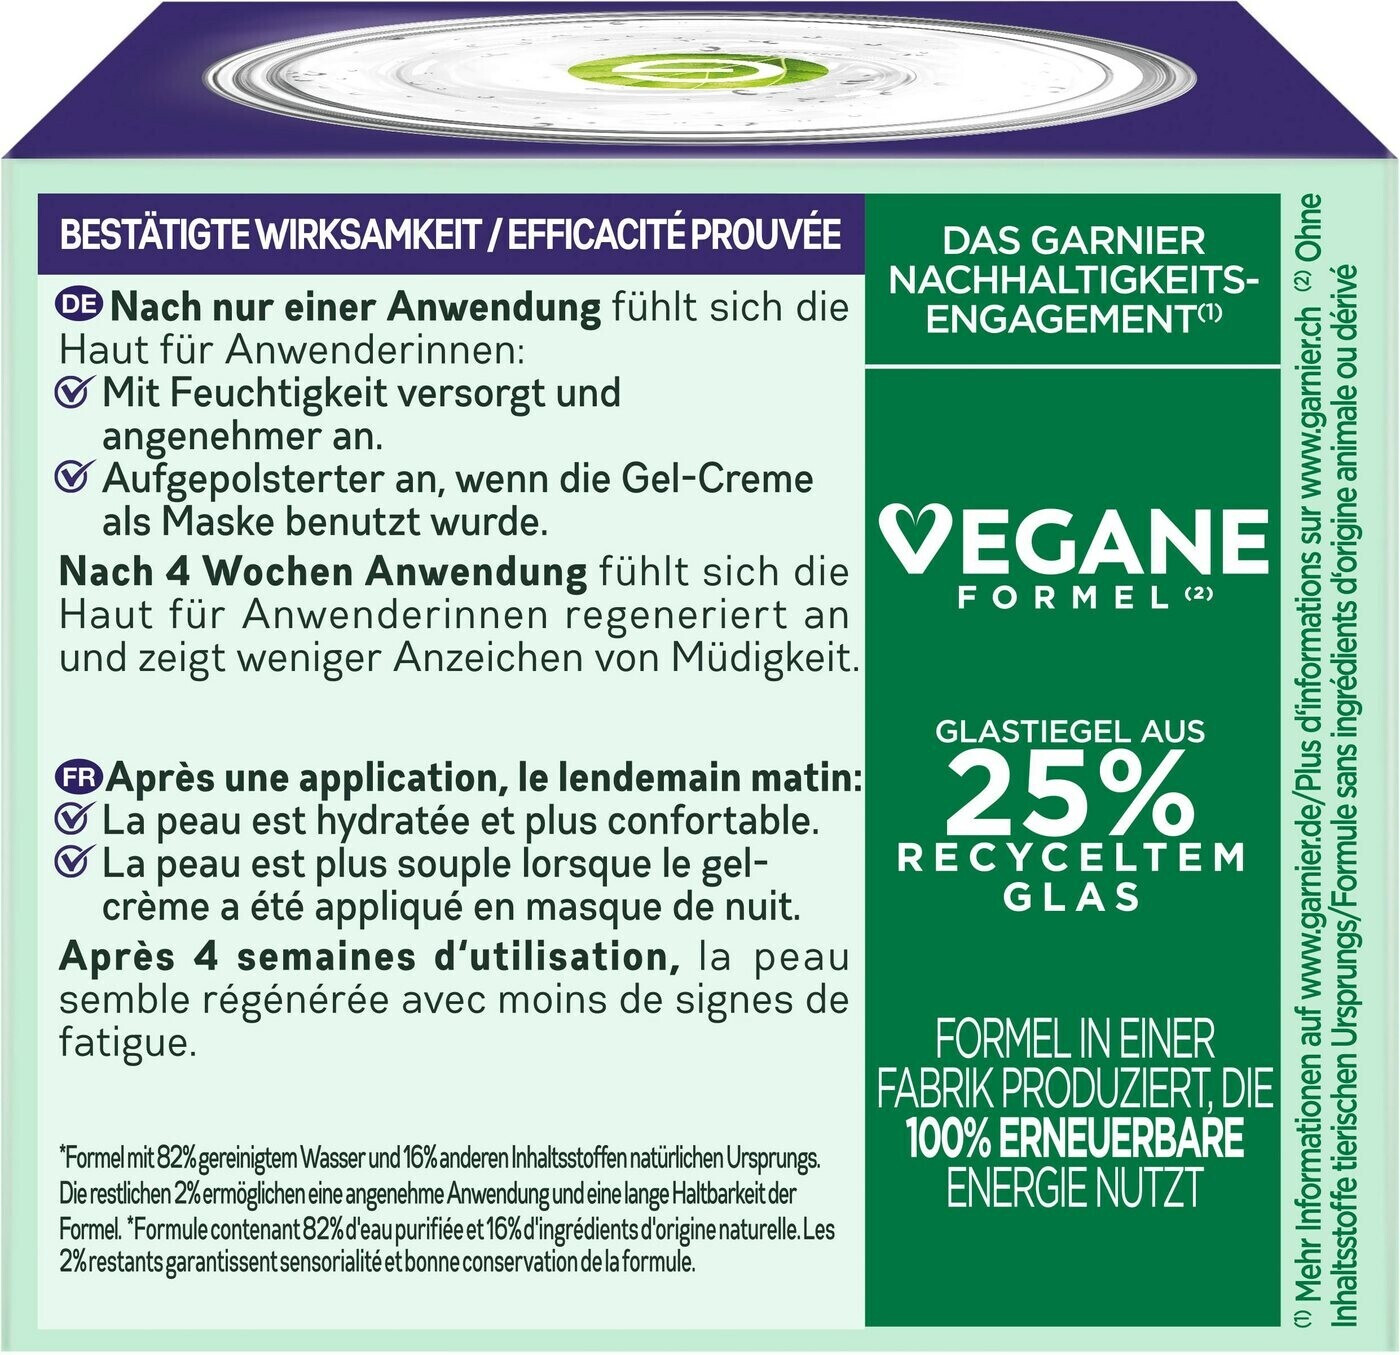 Hydra Skin Booster (50ml) € | Hyaluron Active 5,95 ab bei Nachtcreme Garnier Preisvergleich Aloe